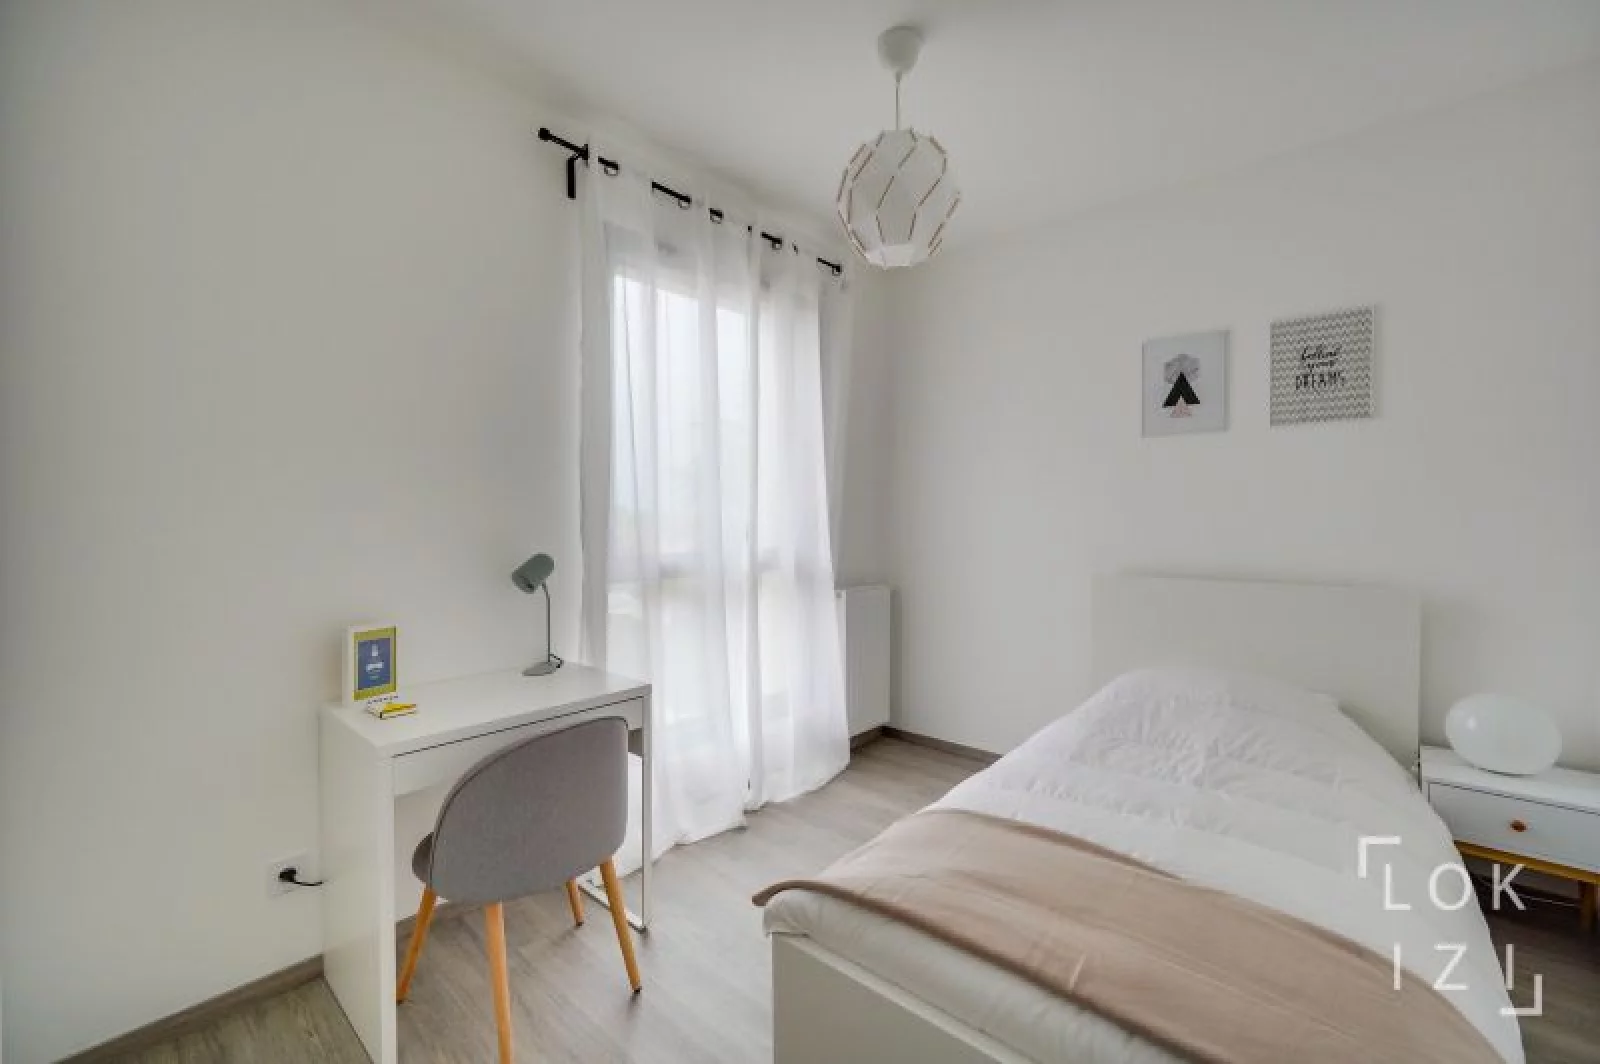 Location appartement meublé 4 pièces 90m² (Bordeaux - Bègles)